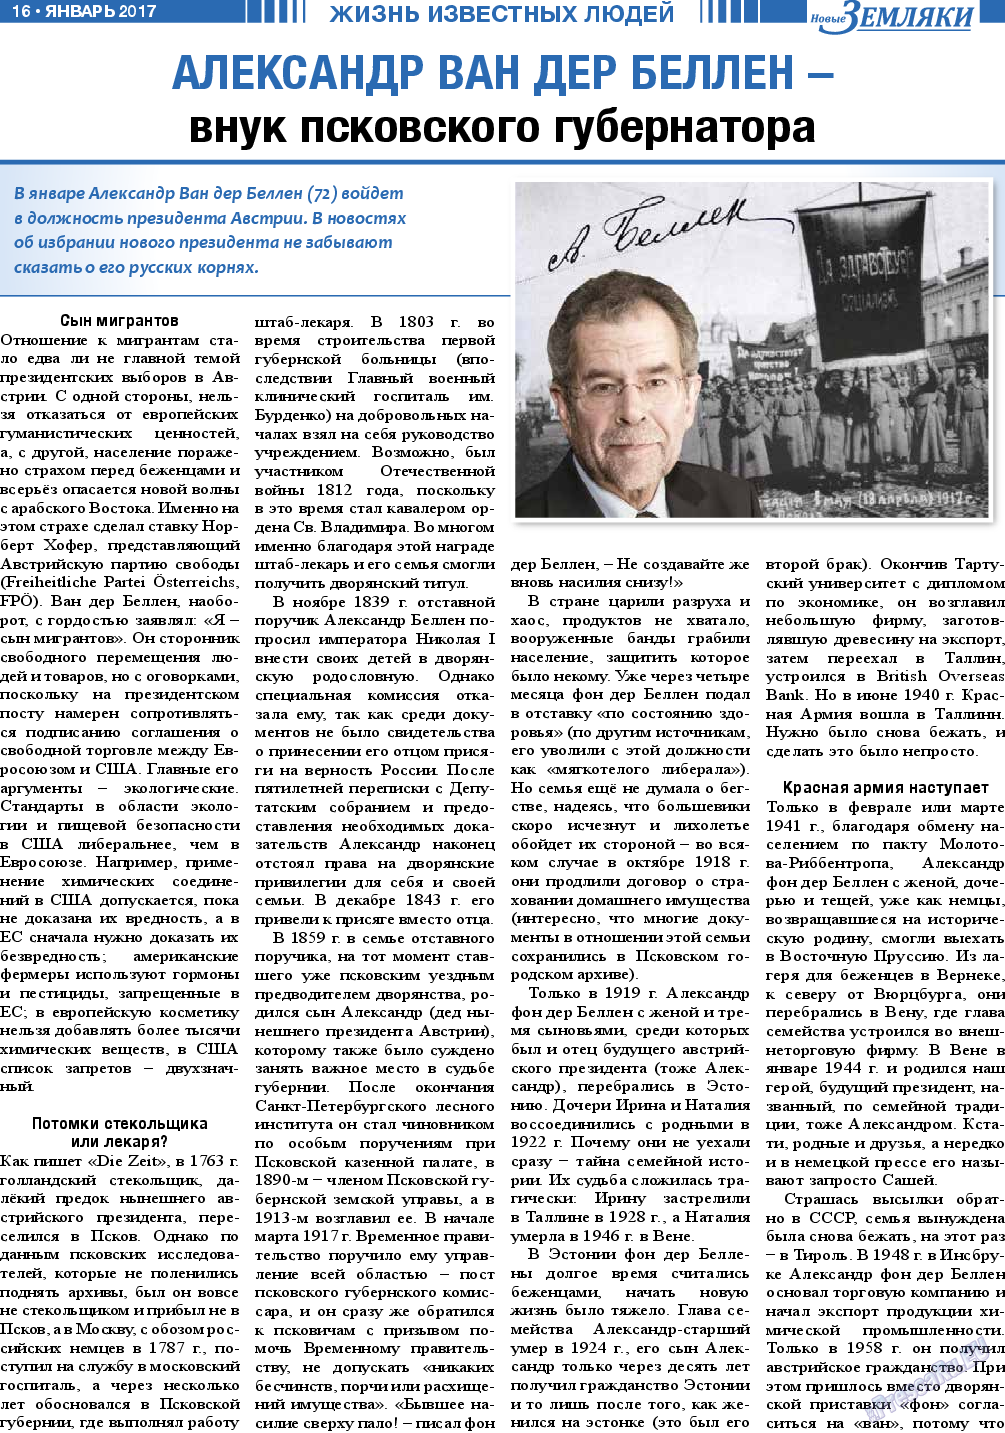 Новые Земляки, газета. 2017 №1 стр.16